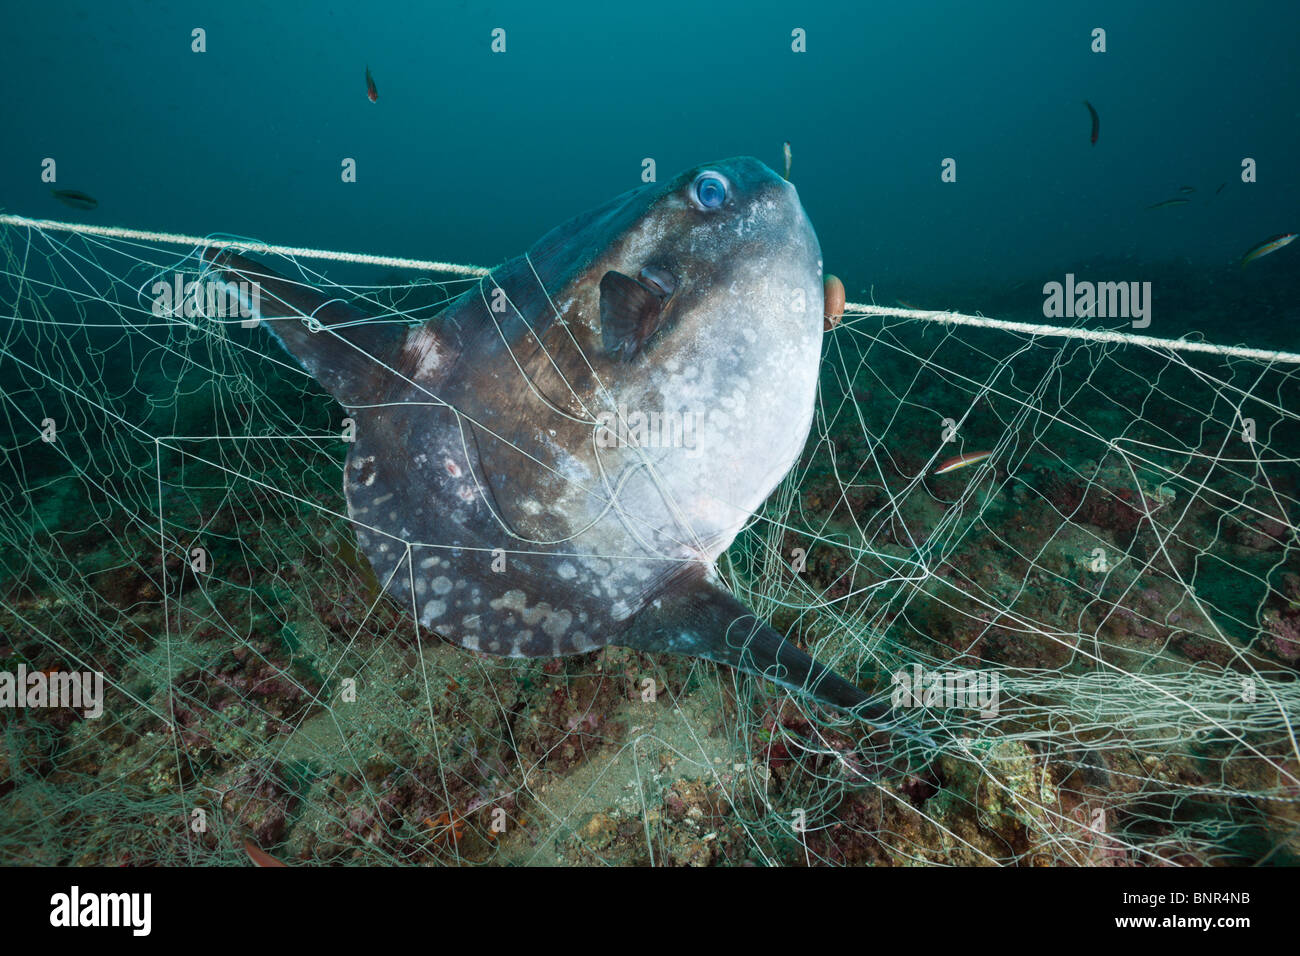 Sunfish trapped in lost Fishing Net, Mola mola, Cap de Creus, Costa Brava, Spain Stock Photo